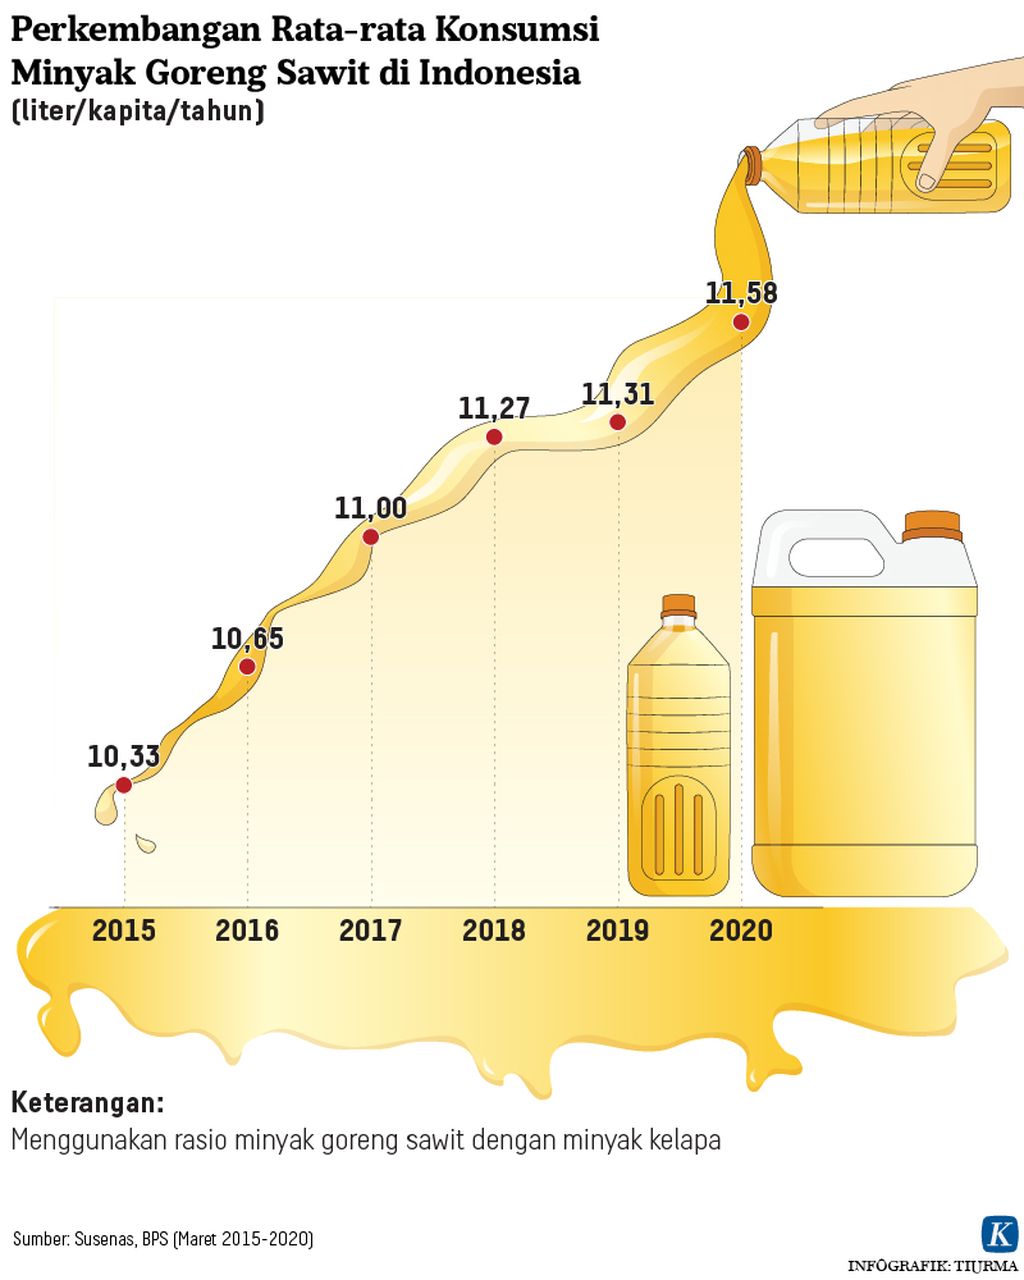 Perkembangan Rata-rata Konsumsi Minyak Goreng Sawit di Indonesia